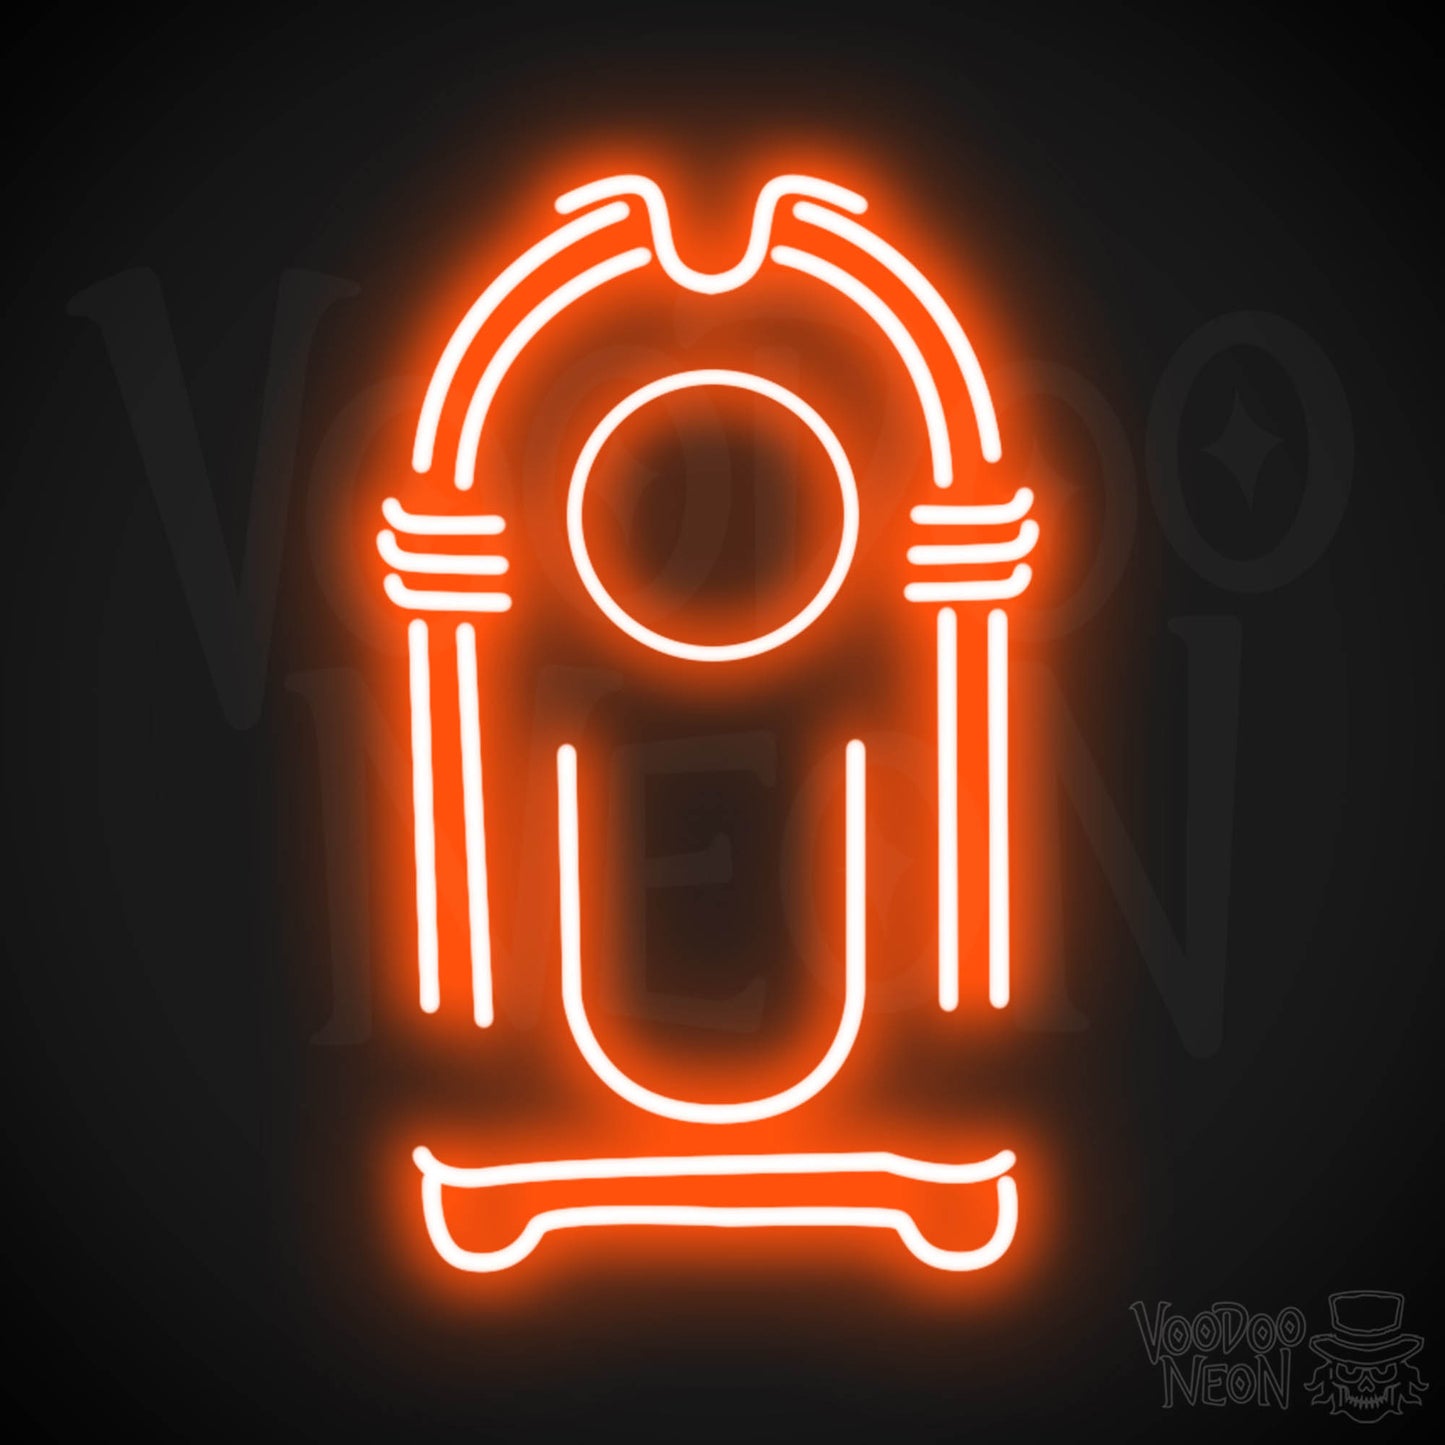 Jukebox Neon Sign - Neon Jukebox Sign - Wall Art - LED Lights - Color Orange